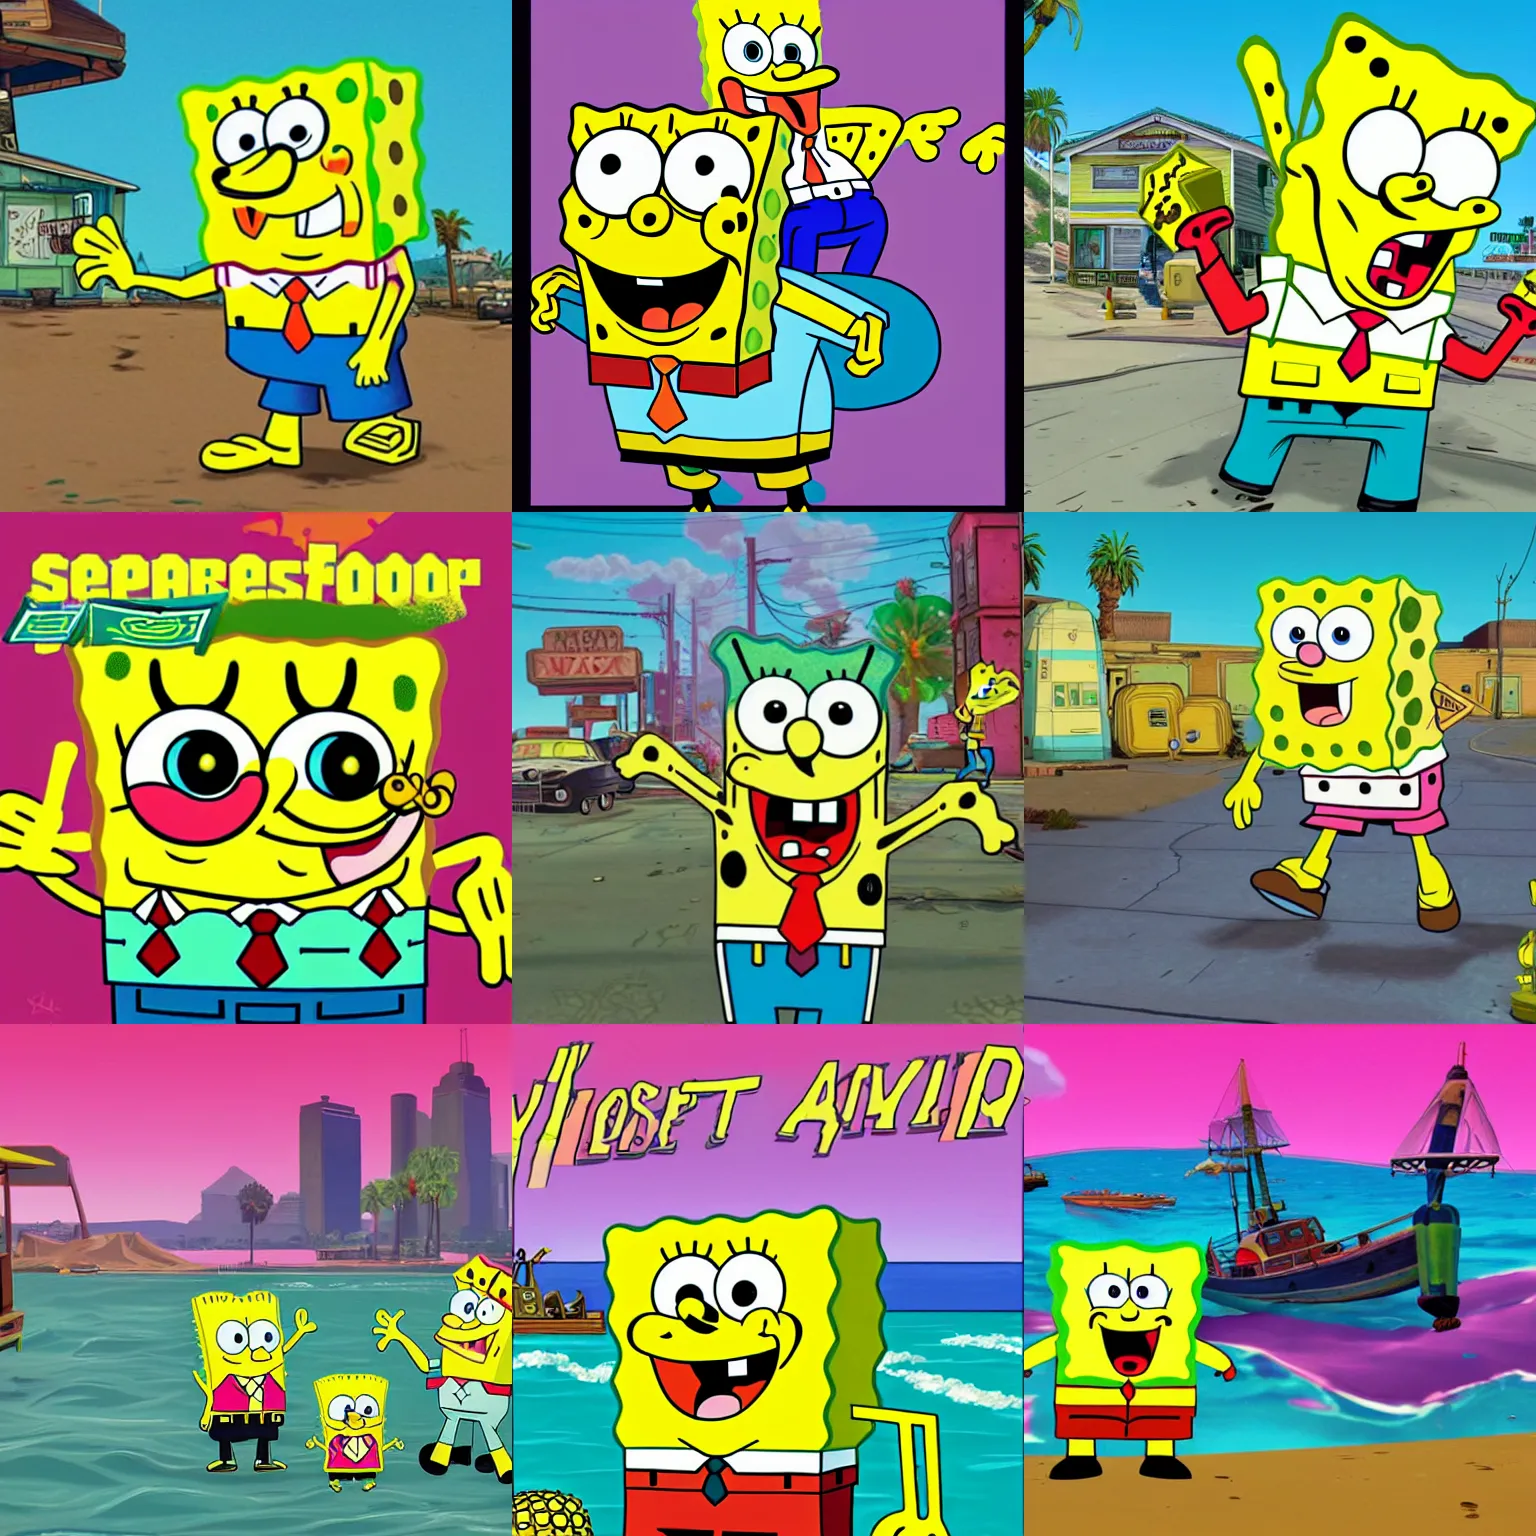 Prompt: Spongebob as GTA V cover art by Stephen Bliss